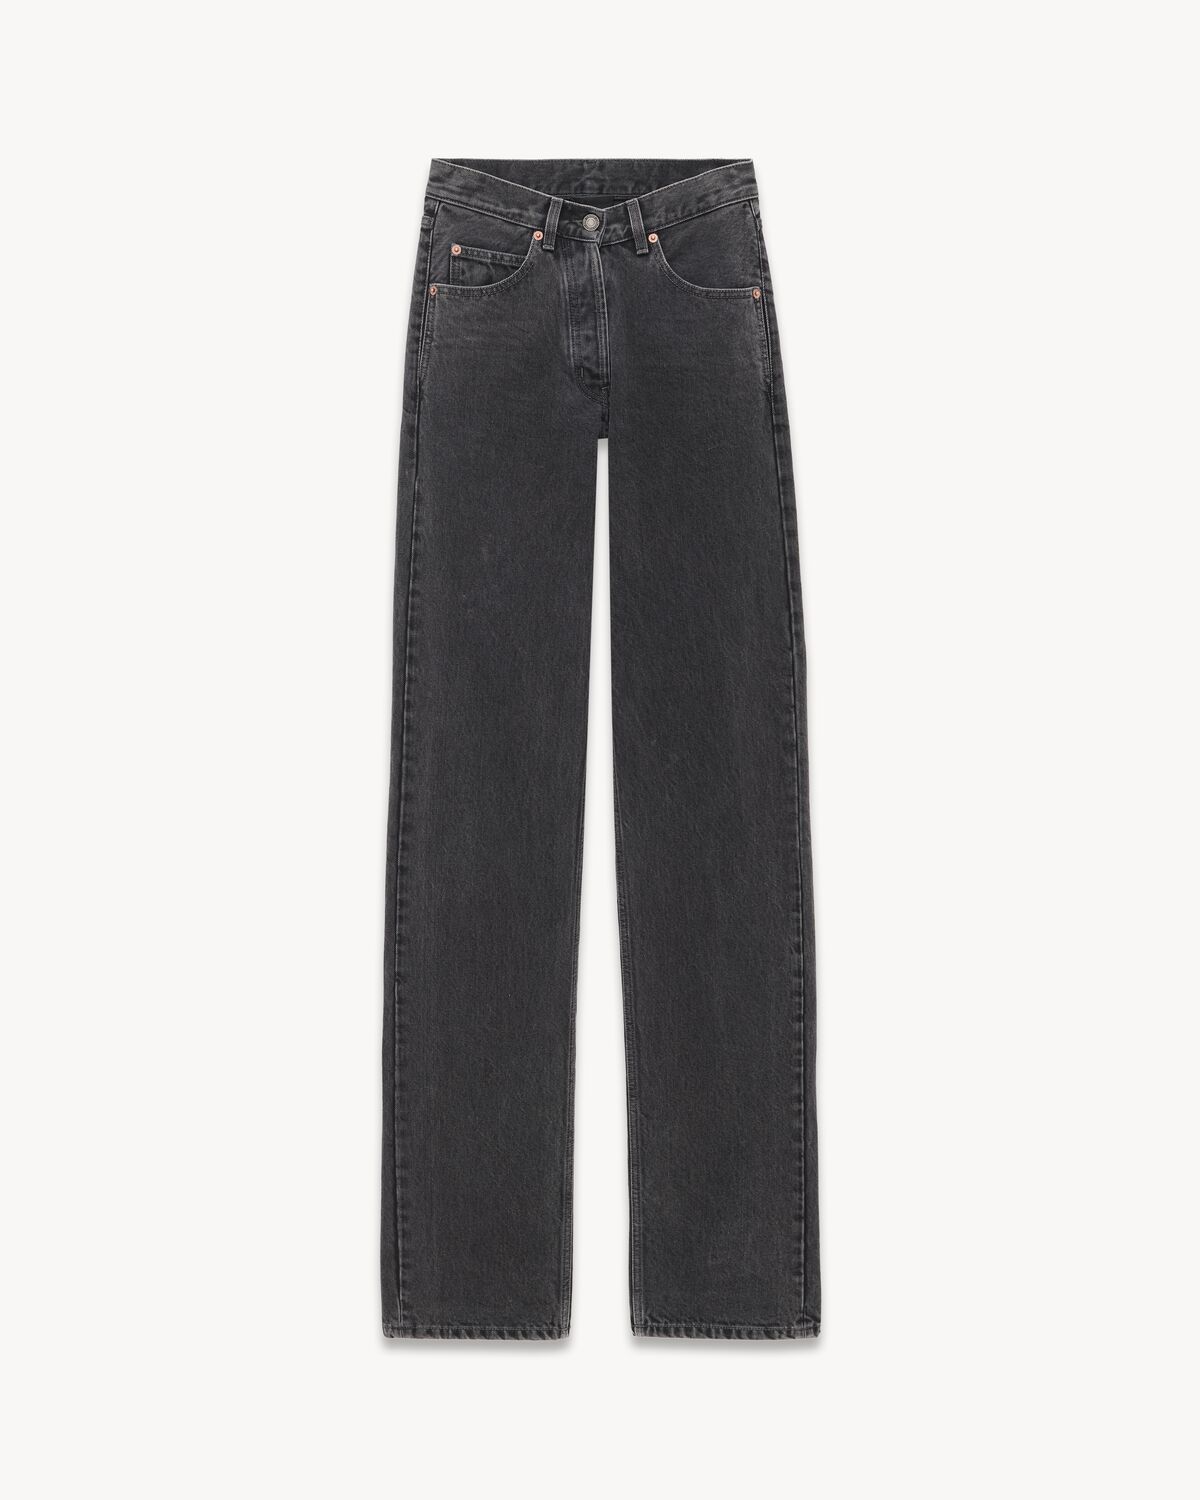 V-waist long baggy jeans in 90'S black denim